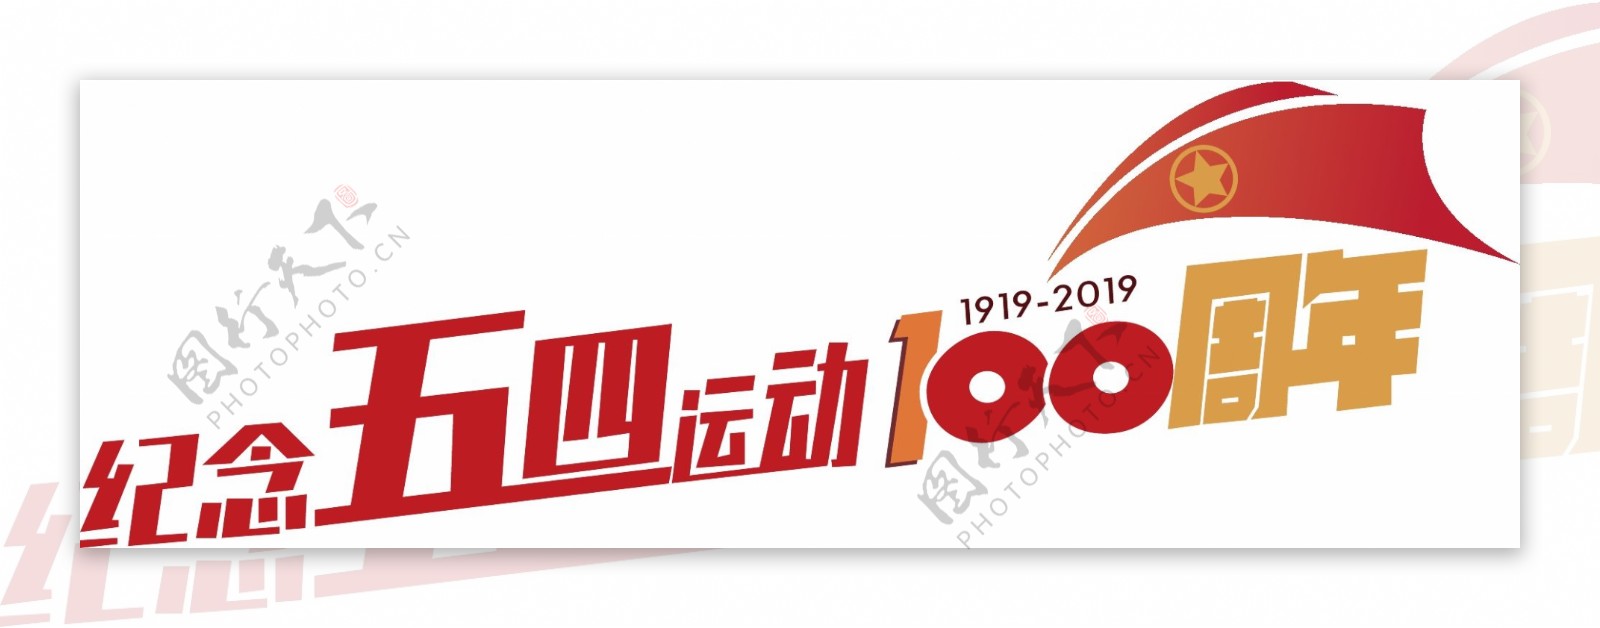 纪念五四运动100周年